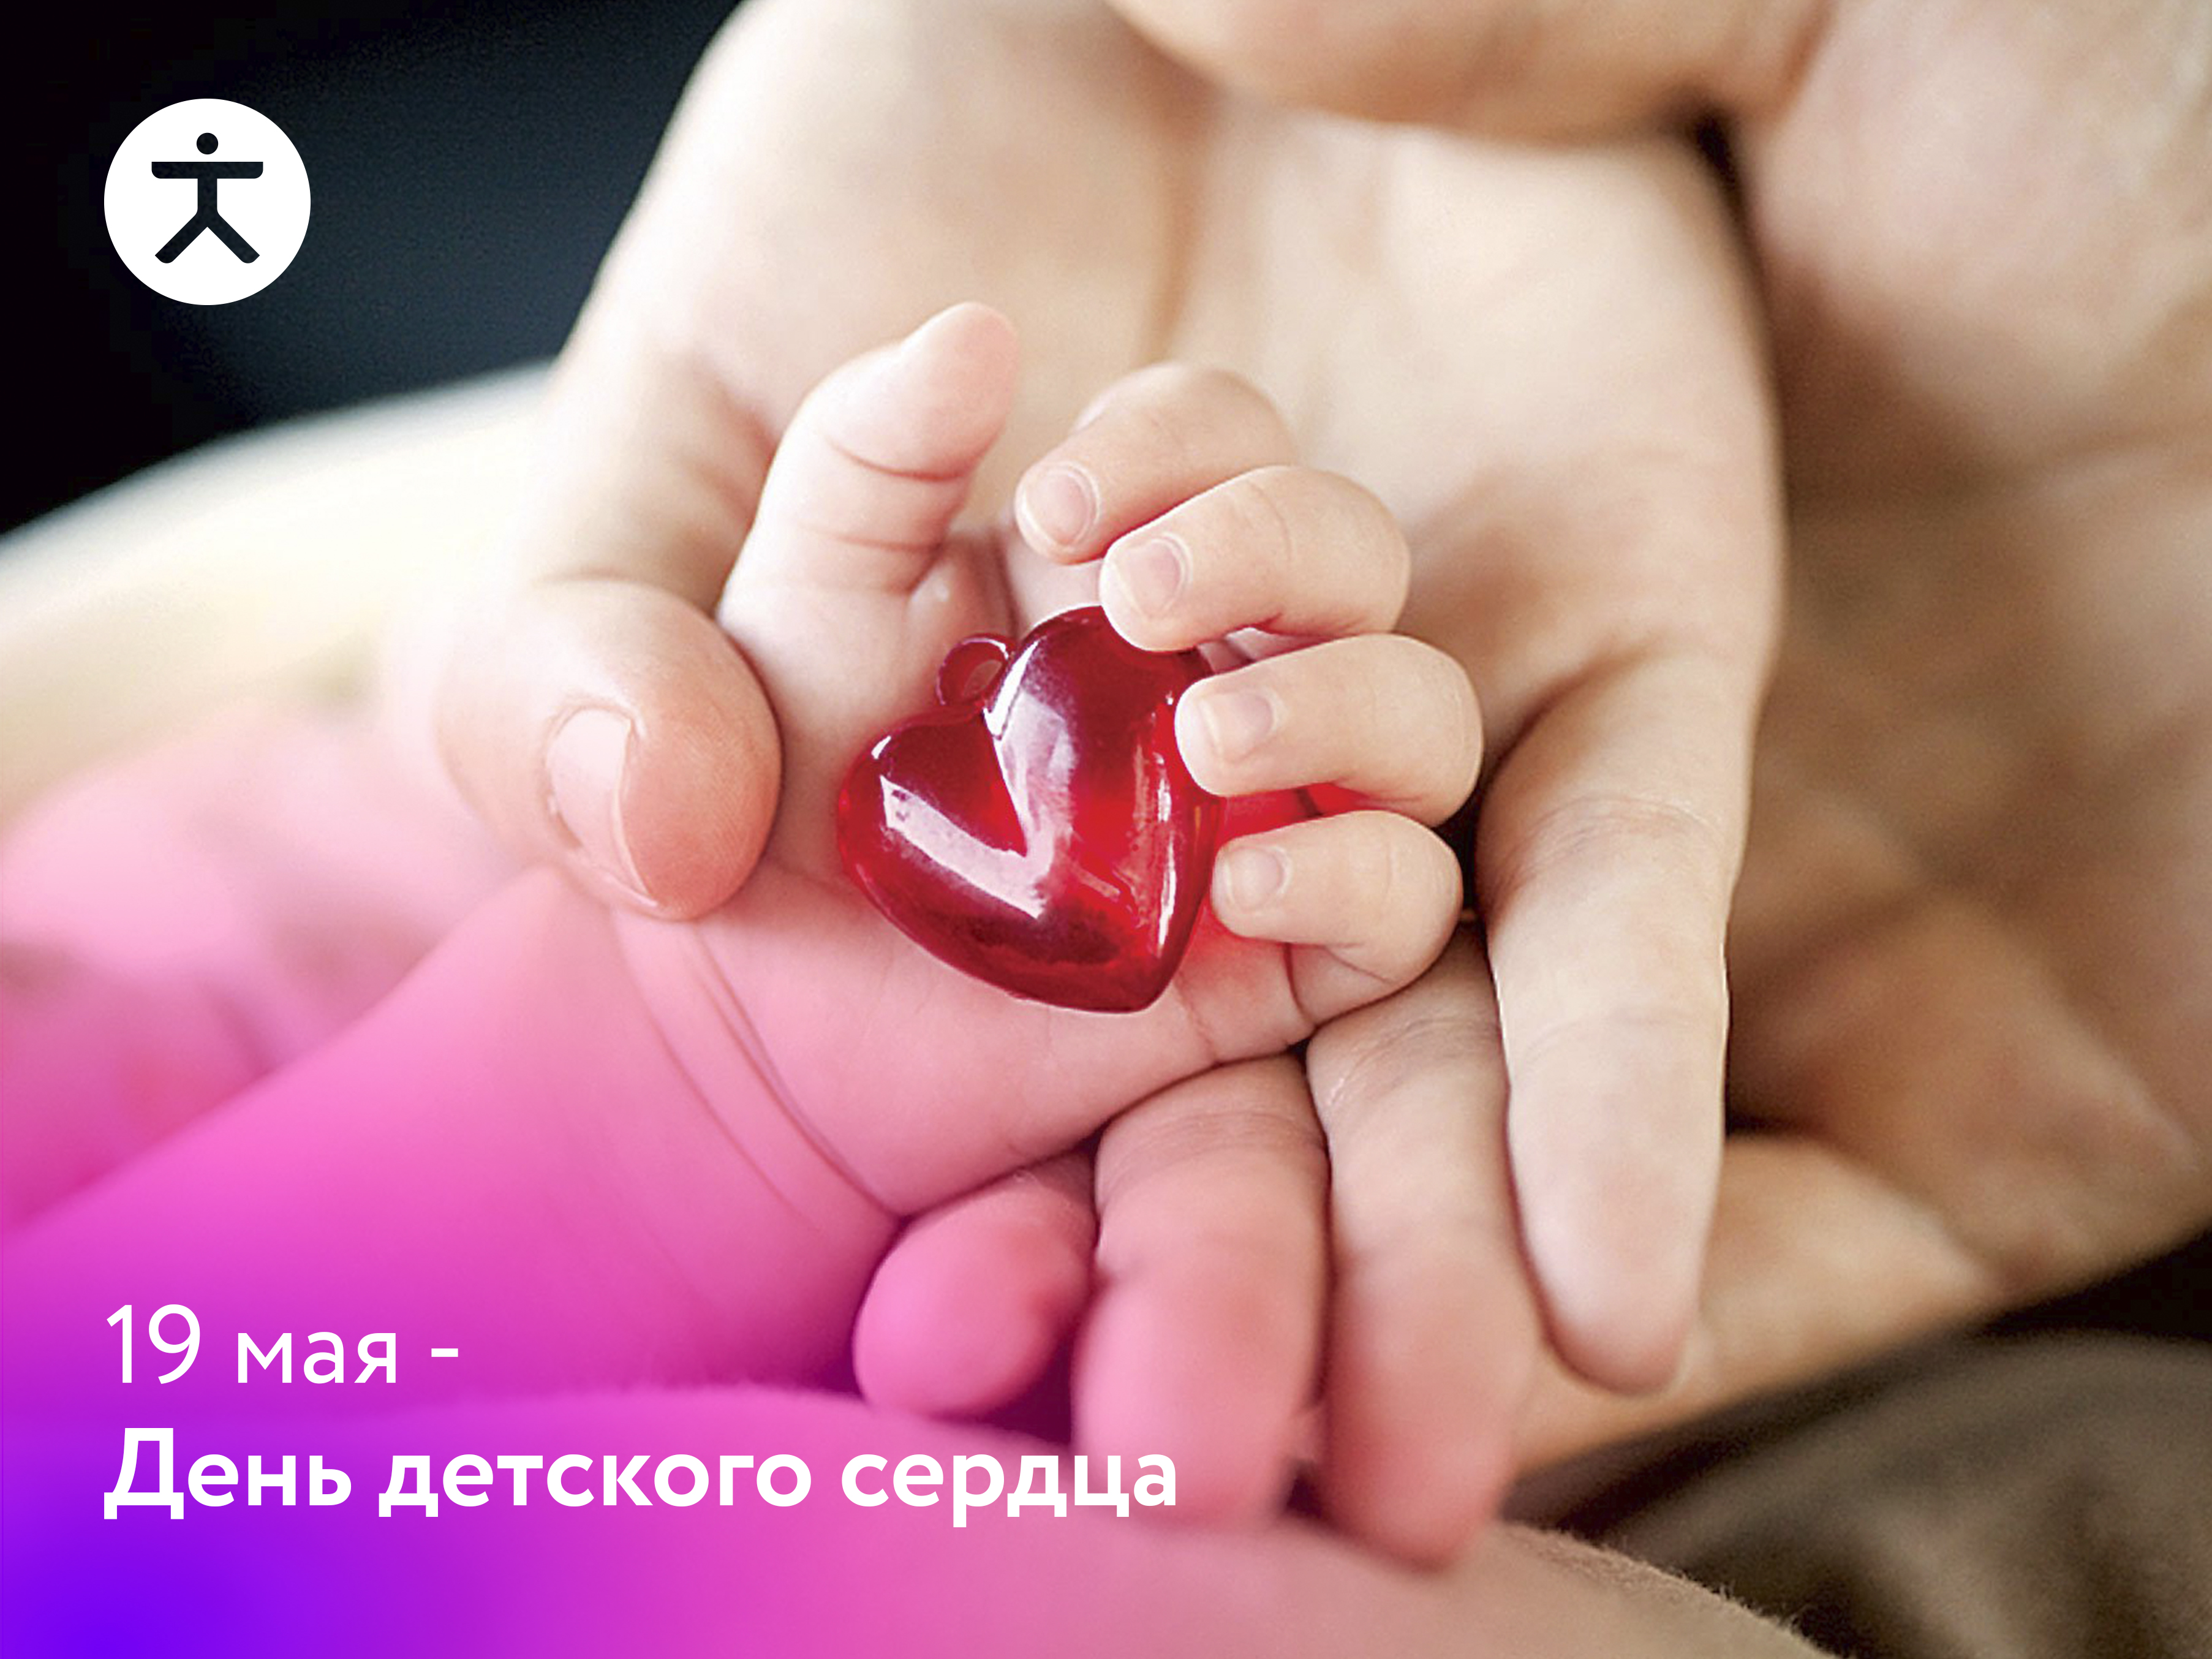 19 мая - День детского сердца